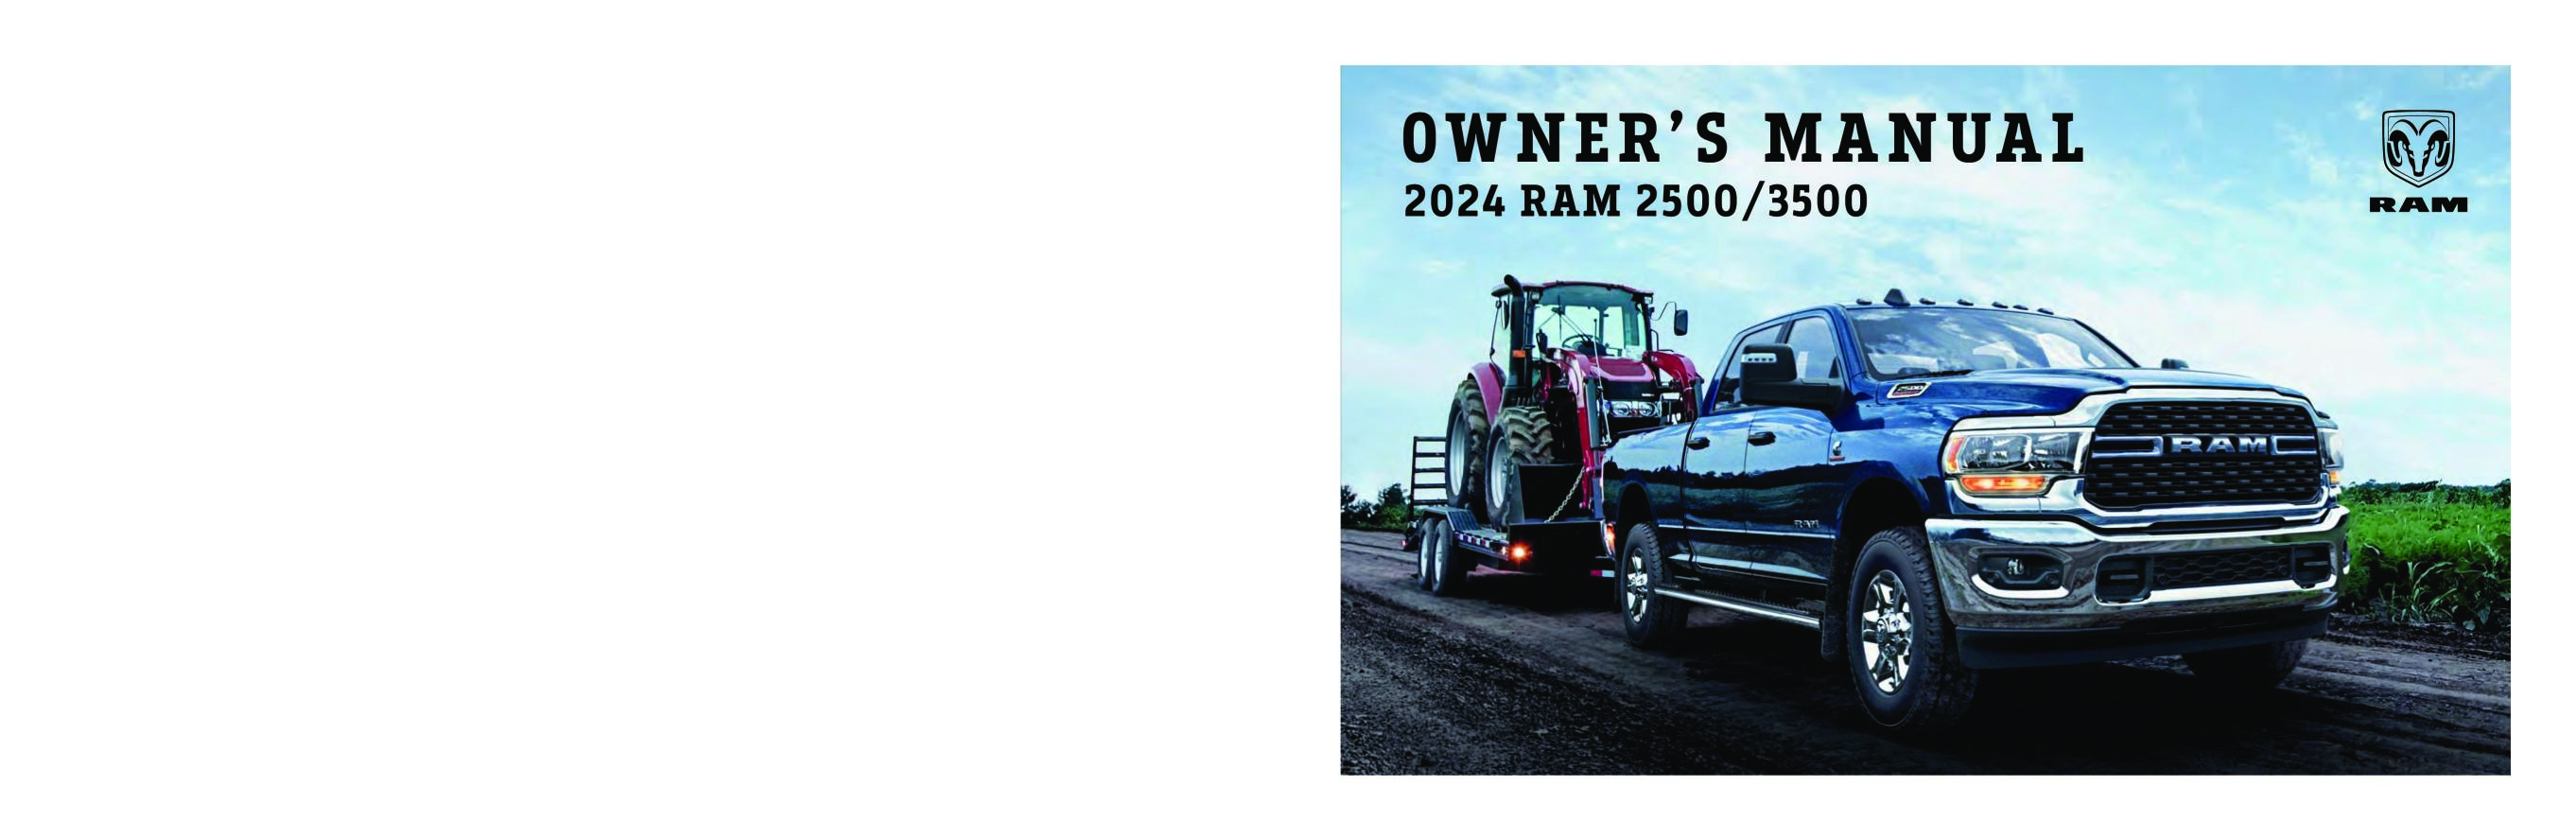 2024 RAM 2500 Owner's Manual